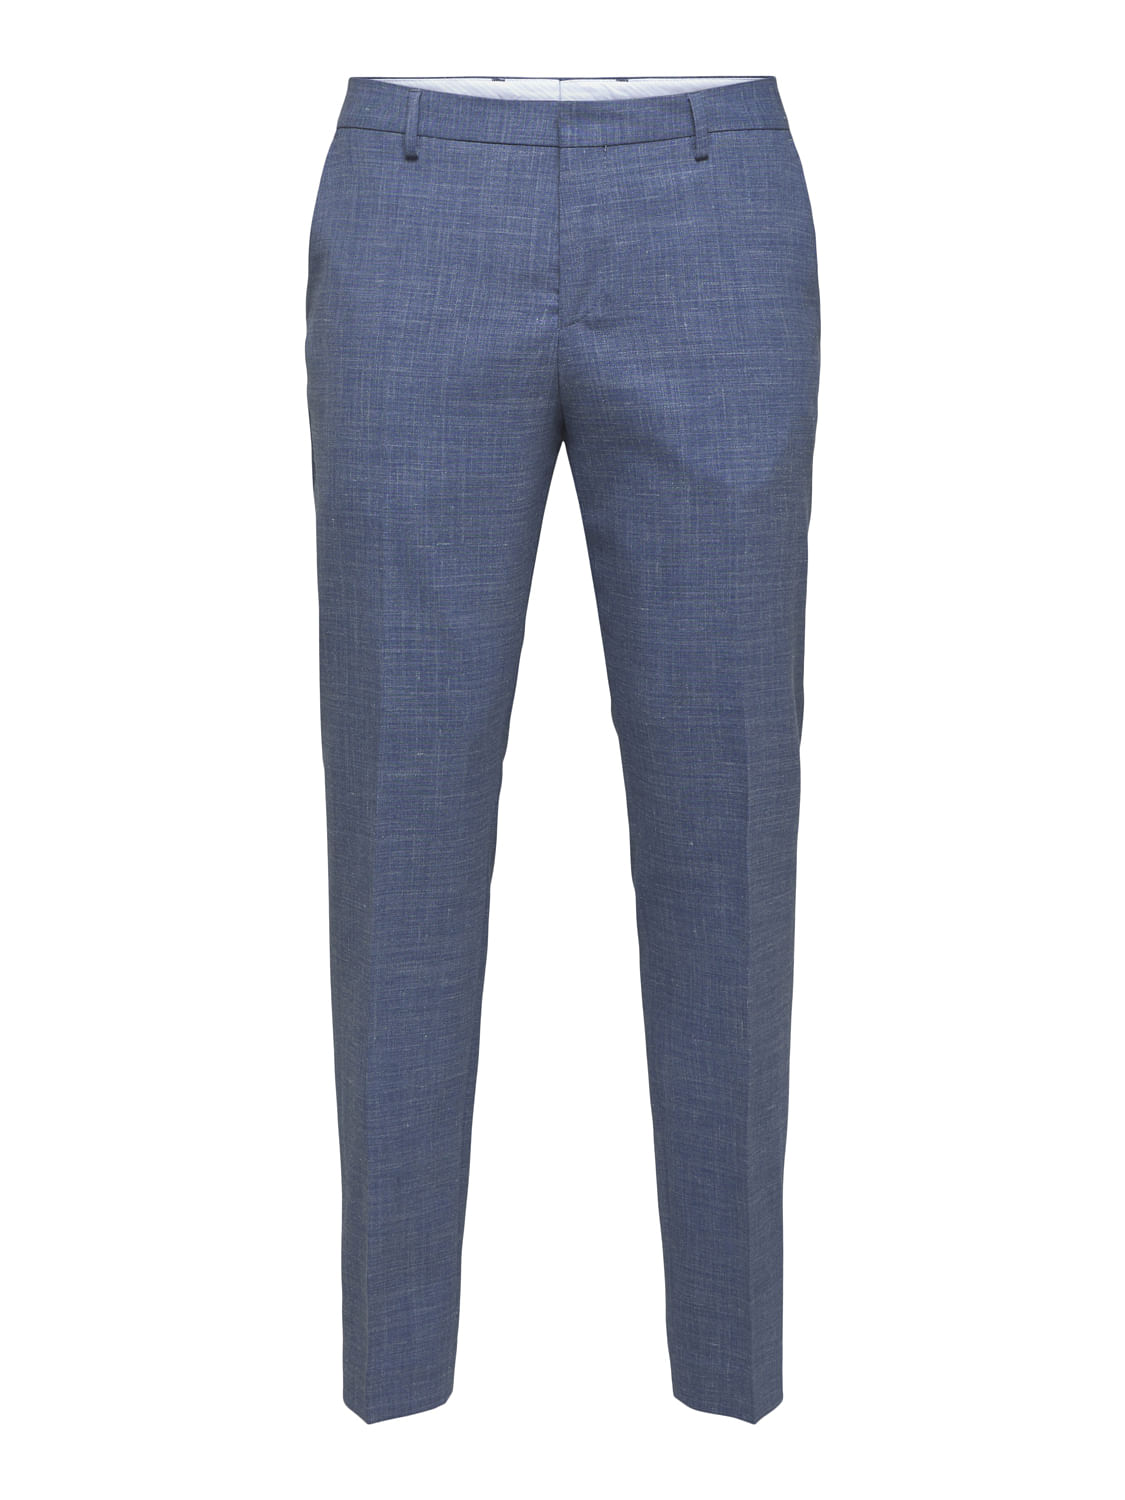 Buy Mens Blue Slim Fit Trousers for Men Blue Online at Bewakoof